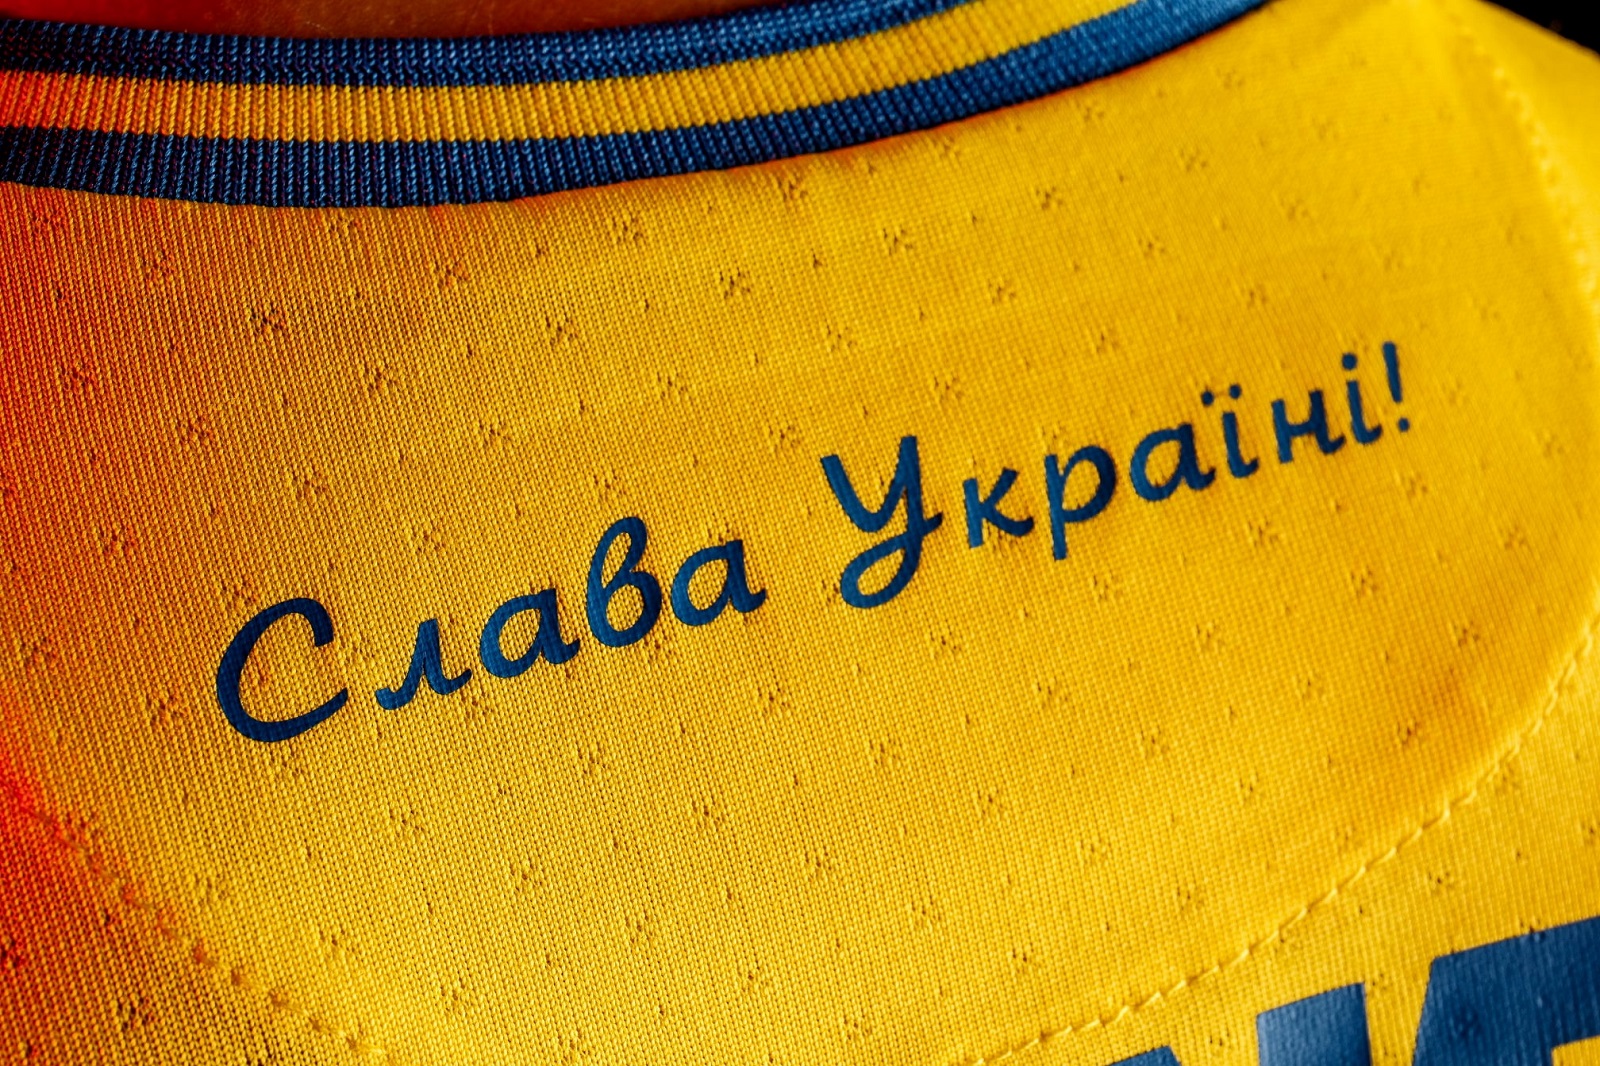 УЕФА патрабуе прыбраць з формы зборнай Украіны надпіс "Героям слава!"